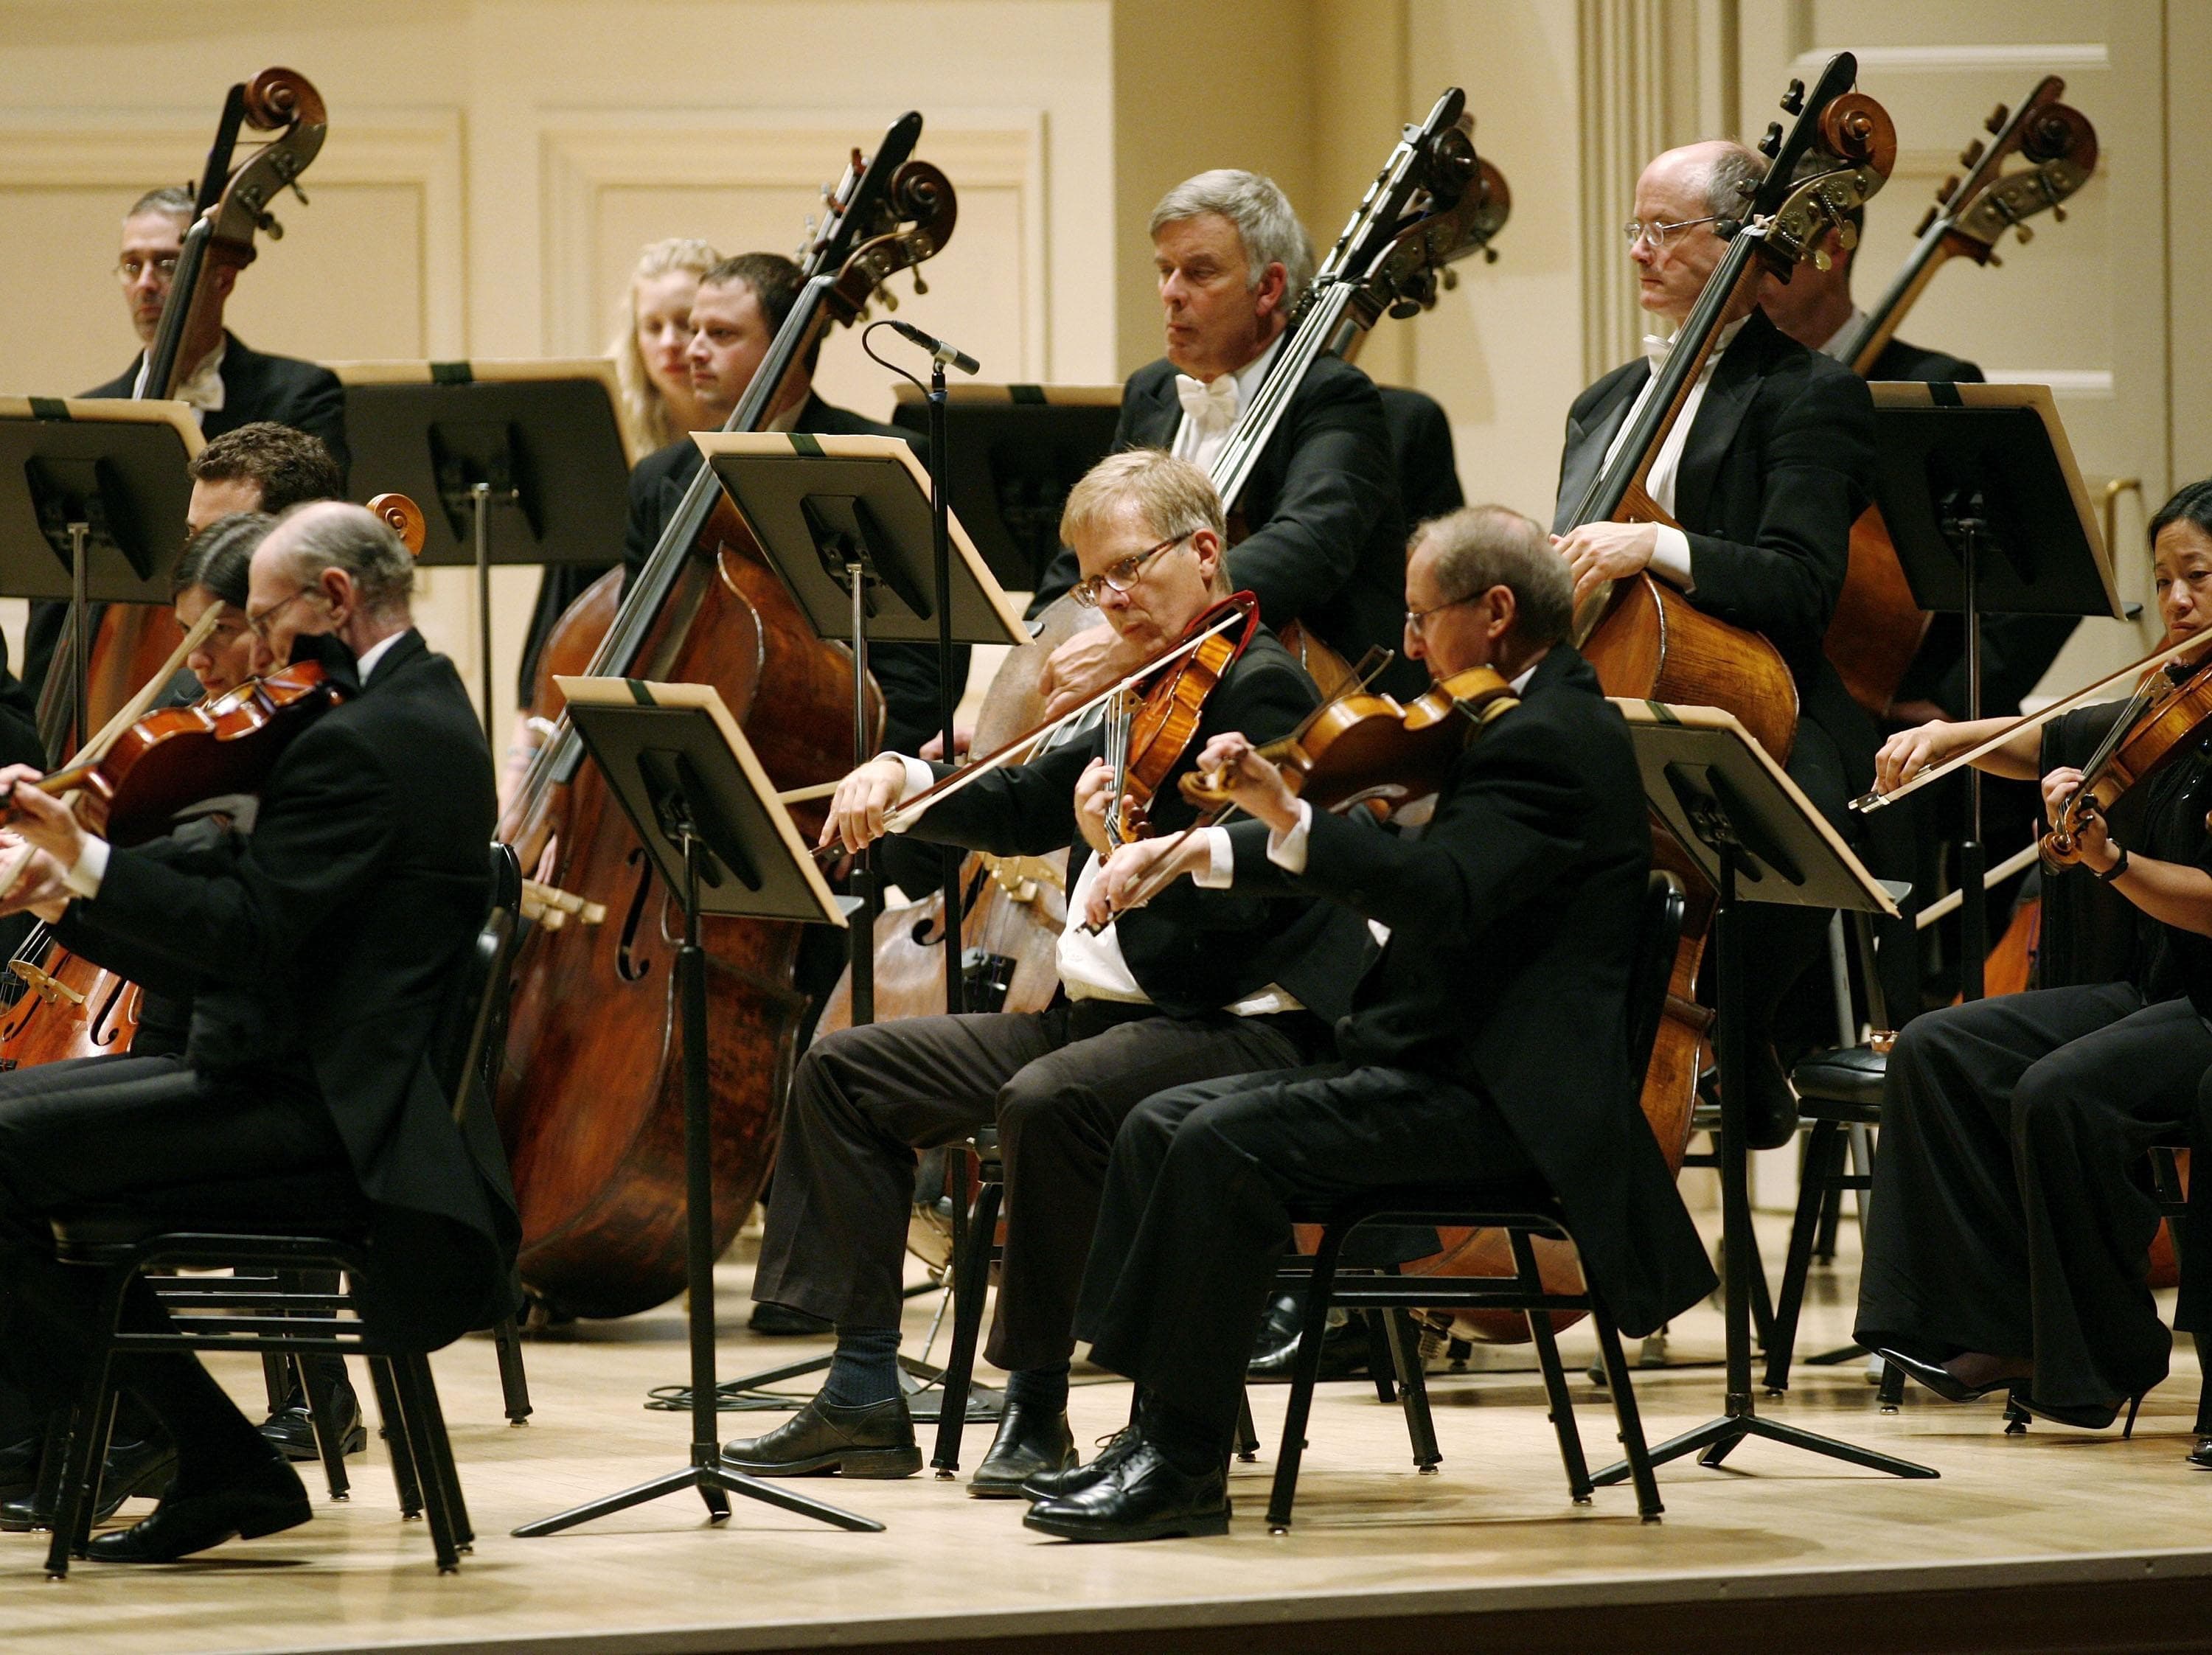 Человек играющий в оркестре. Бостонский Симфони-Холл. Лягушки играющие оркестр.